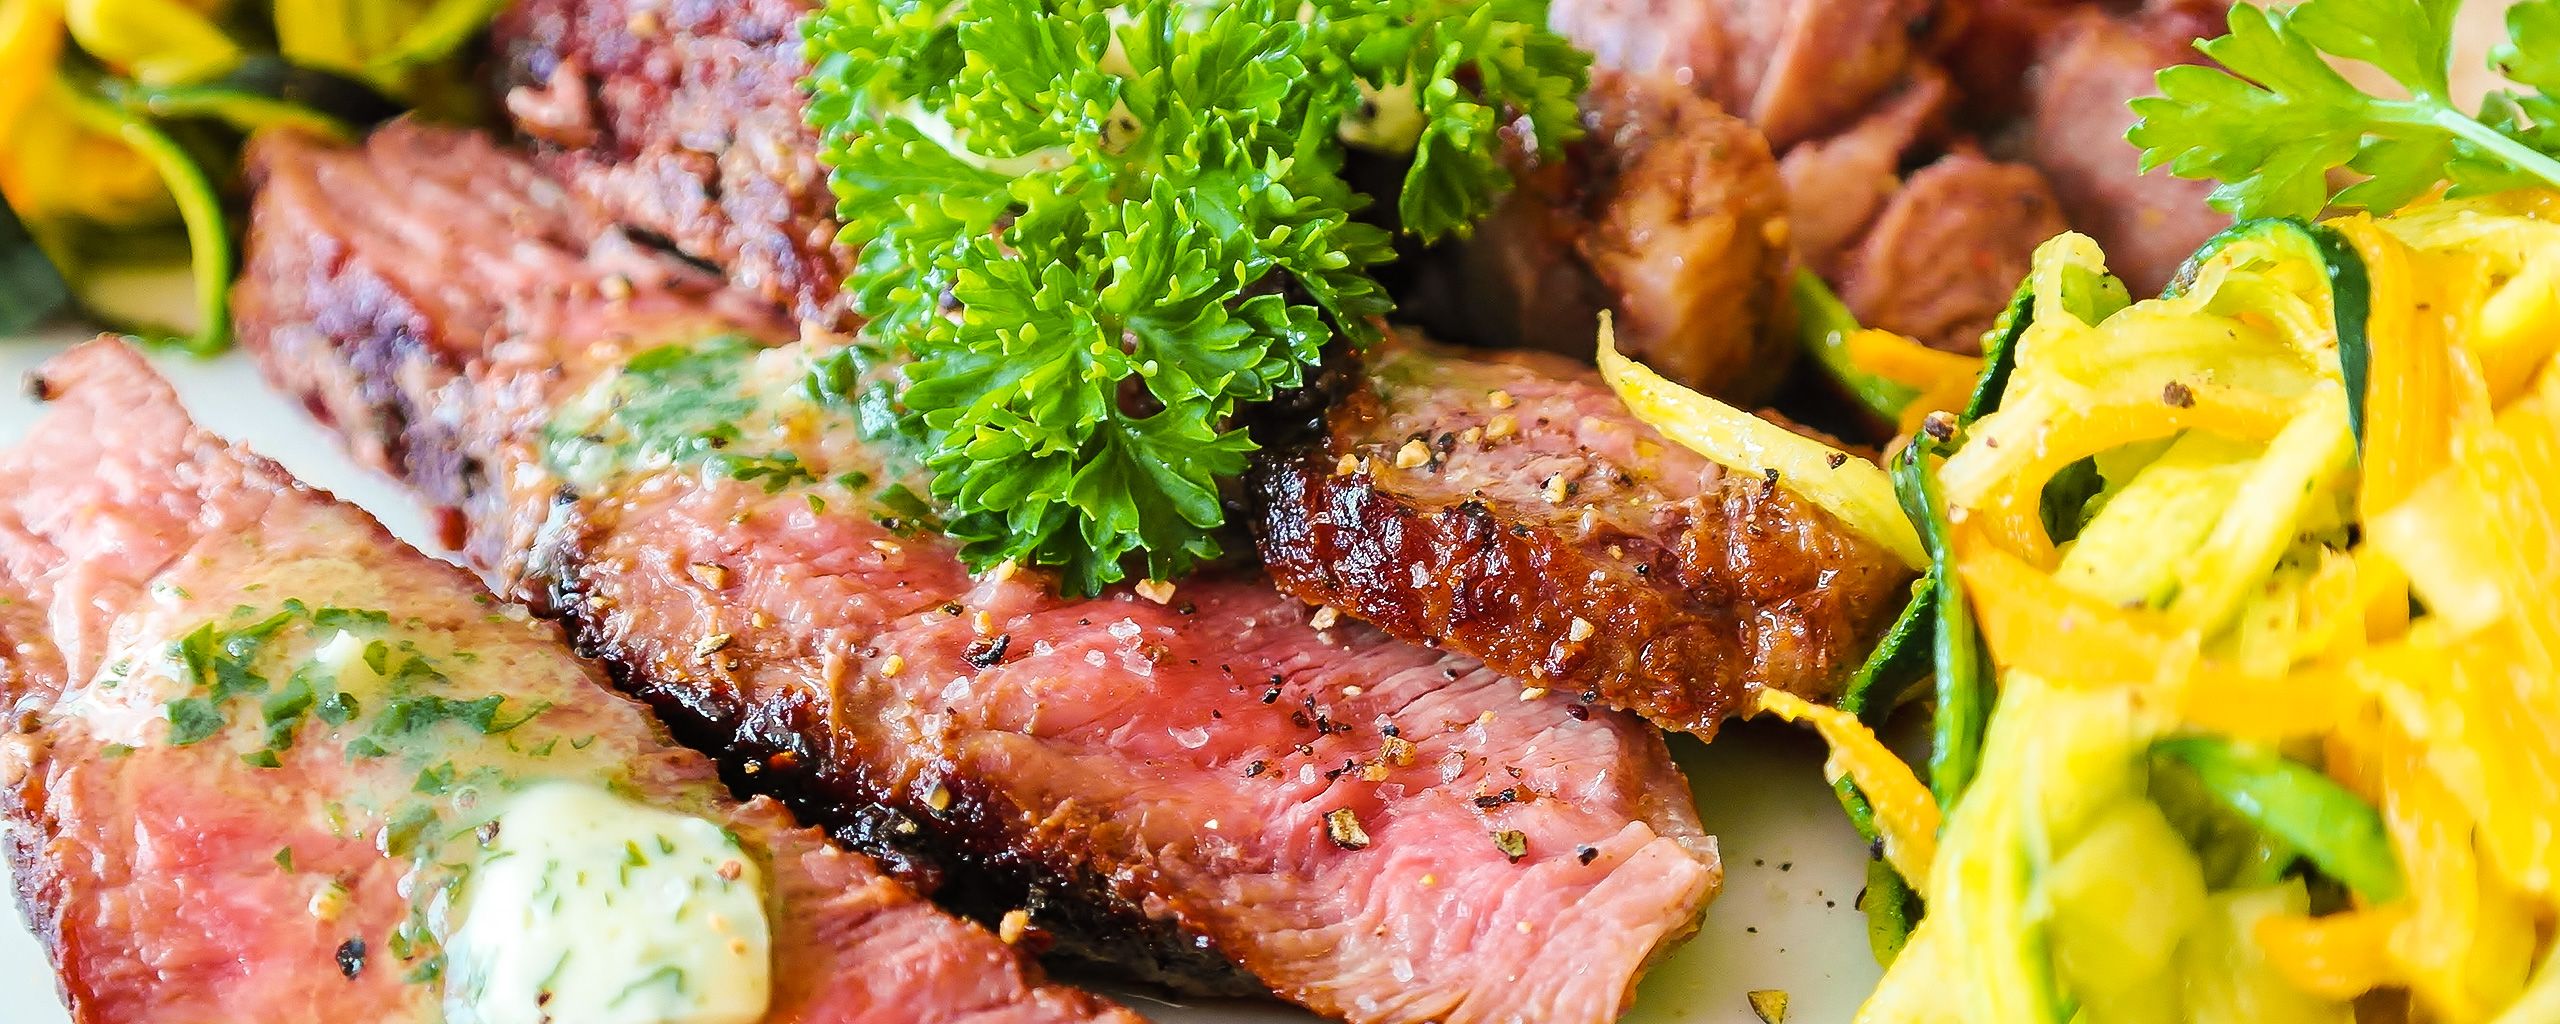 Foto: Steak mit Kräuterbutter im RESTAURANT KEGELKOTTEN in Dortmund-Brechten